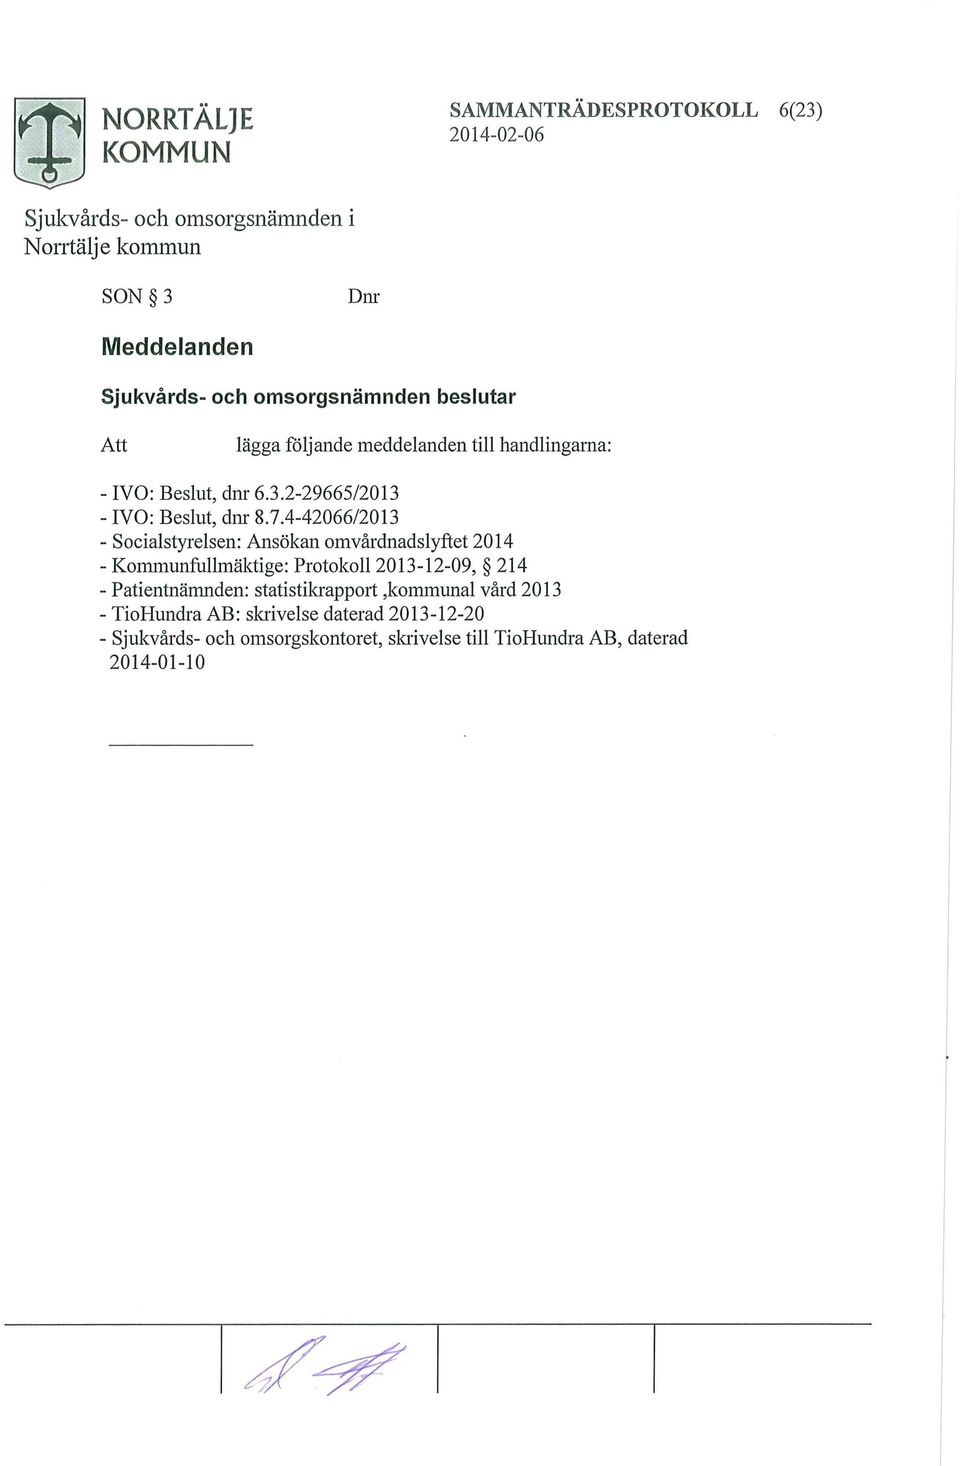 4-42066/2013 - Socialstyrelsen: Ansökan omvårdnadslyftet 2014 - Kommunfullmäktige: Protokoll 2013-12-09, 214 -